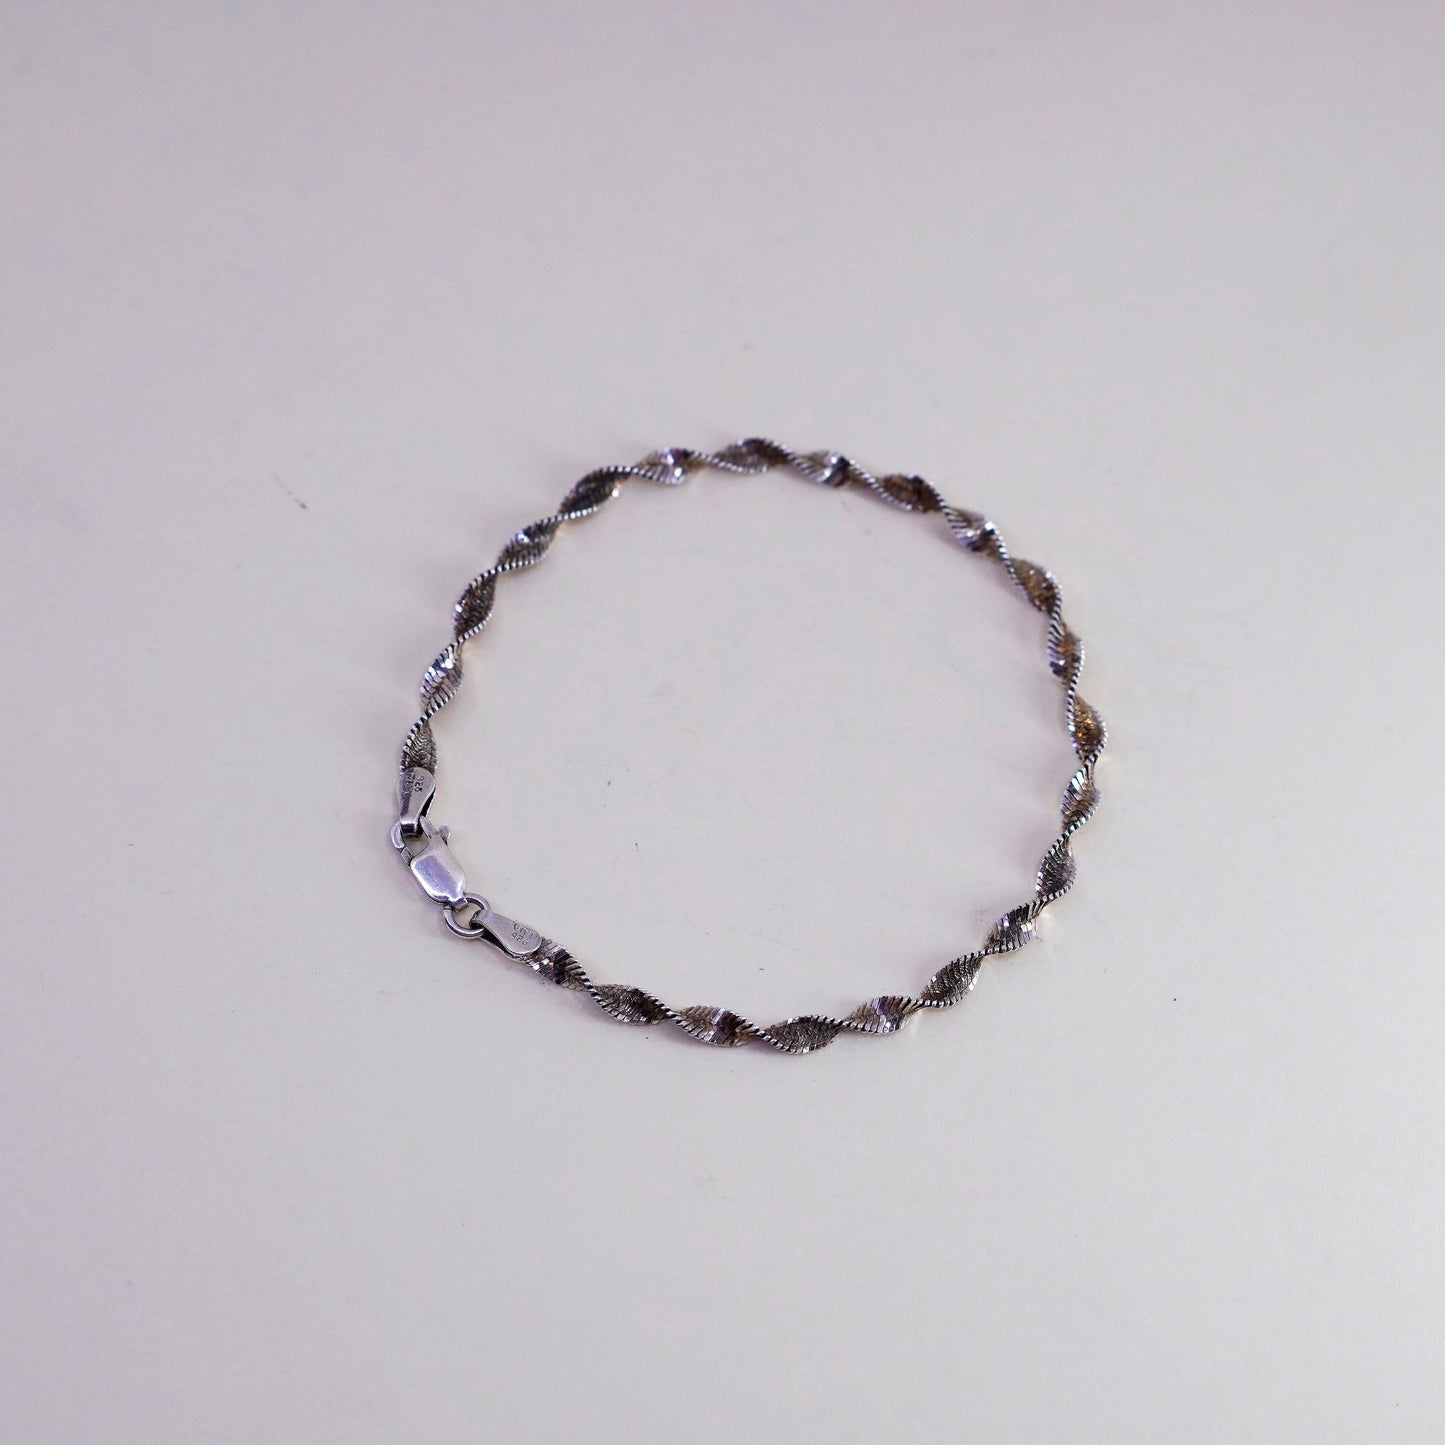 7”, 4mm, Vintage sterling silver bracelet, 925 twisted herringbone chain